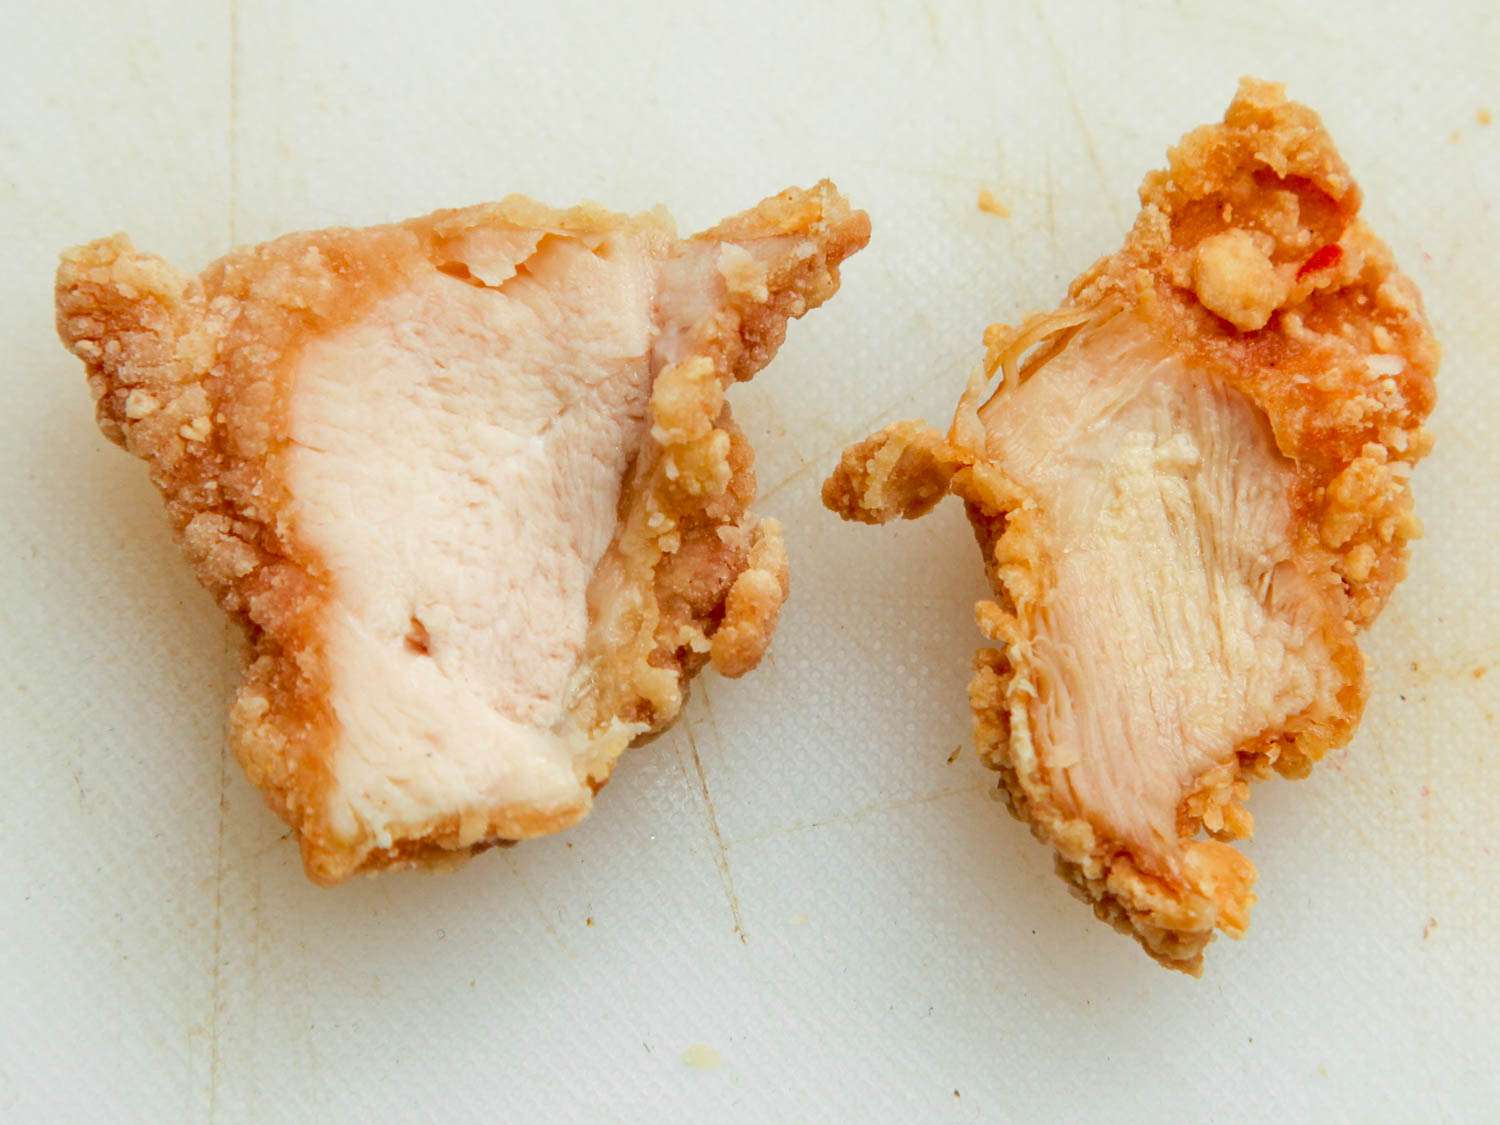 炸鸡胸肉(左)和炸鸡腿肉(右)并排放在白色砧板上。gydF4y2Ba